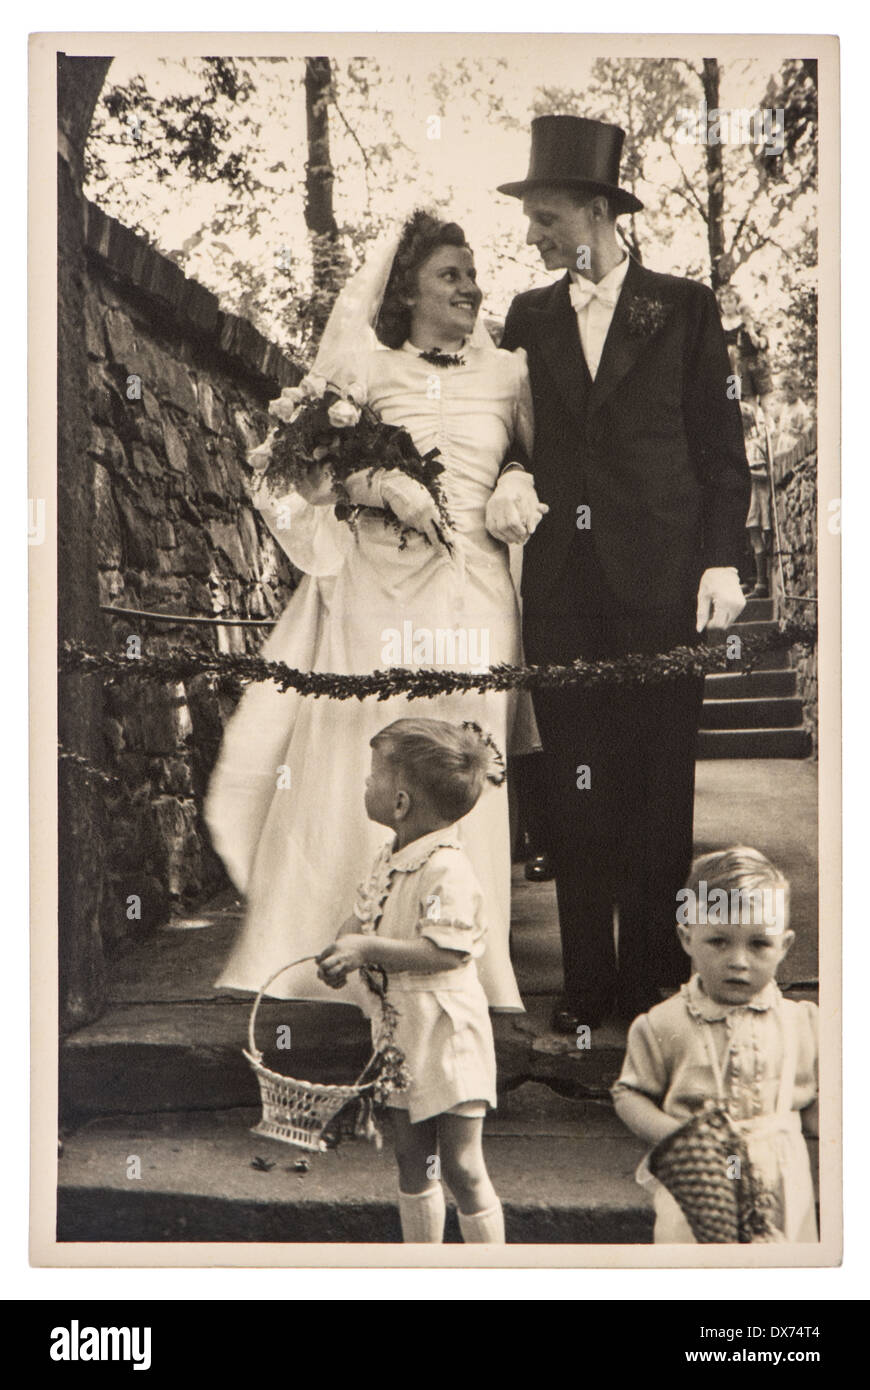 Berlino, Germania - circa 1930: originali antichi wedding photo. ritratto di appena una coppia sposata. immagine nostalgica, circa 1930 Foto Stock